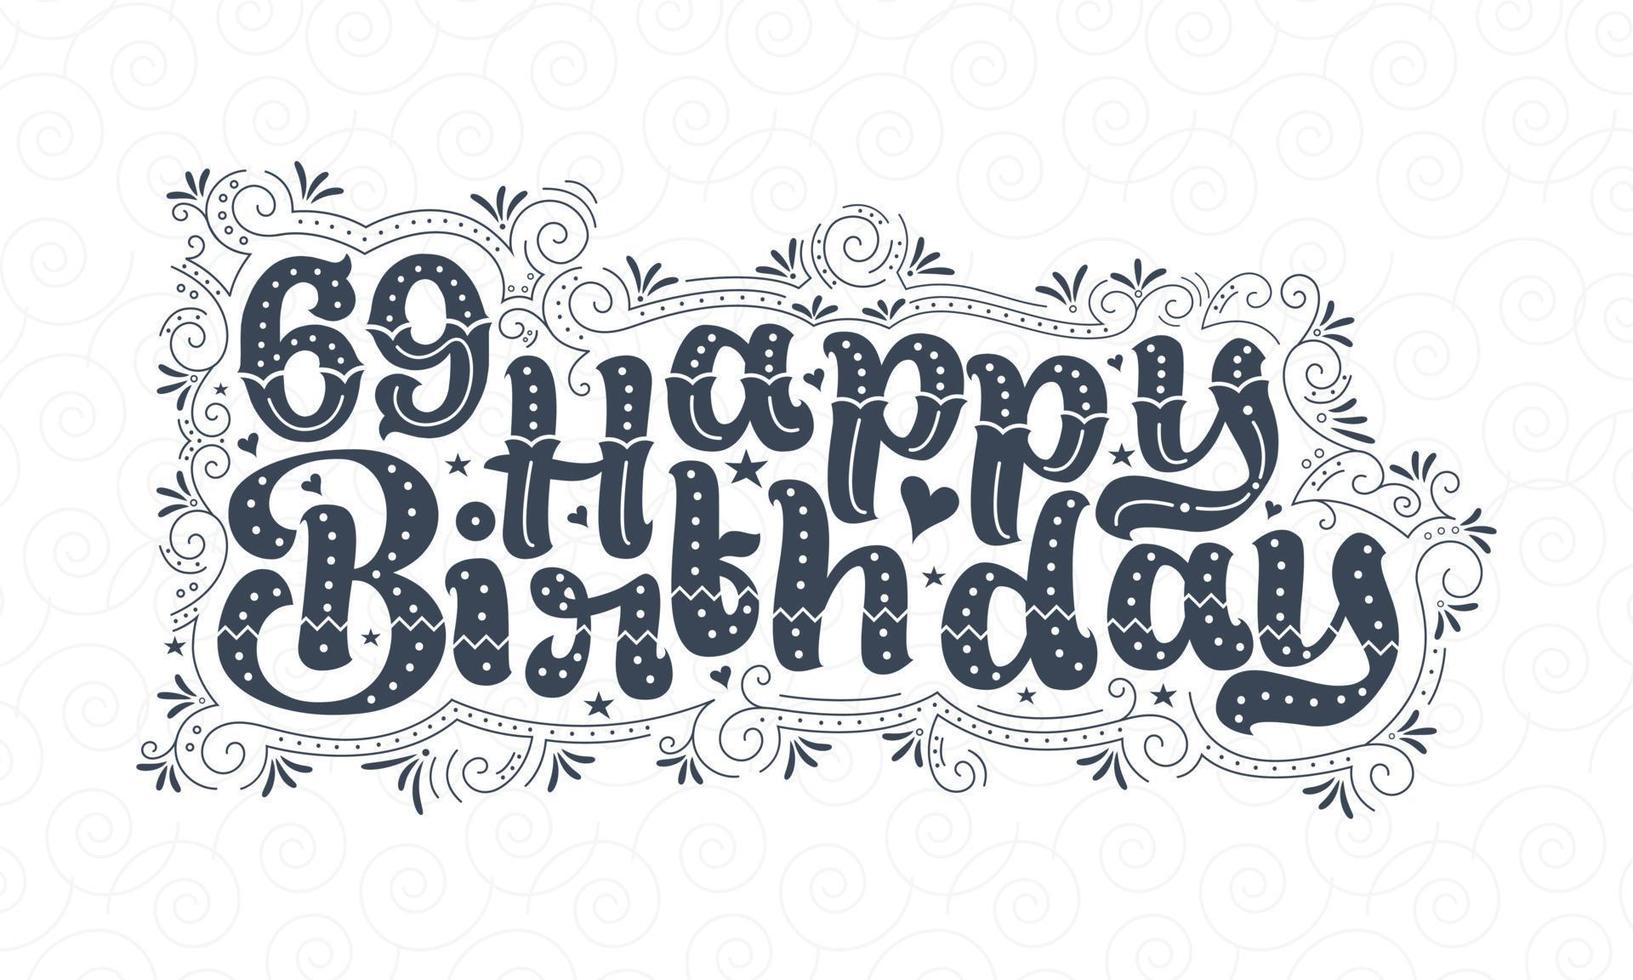 69:e grattis på födelsedagen bokstäver, 69 års födelsedag vacker typografidesign med prickar, linjer och löv. vektor